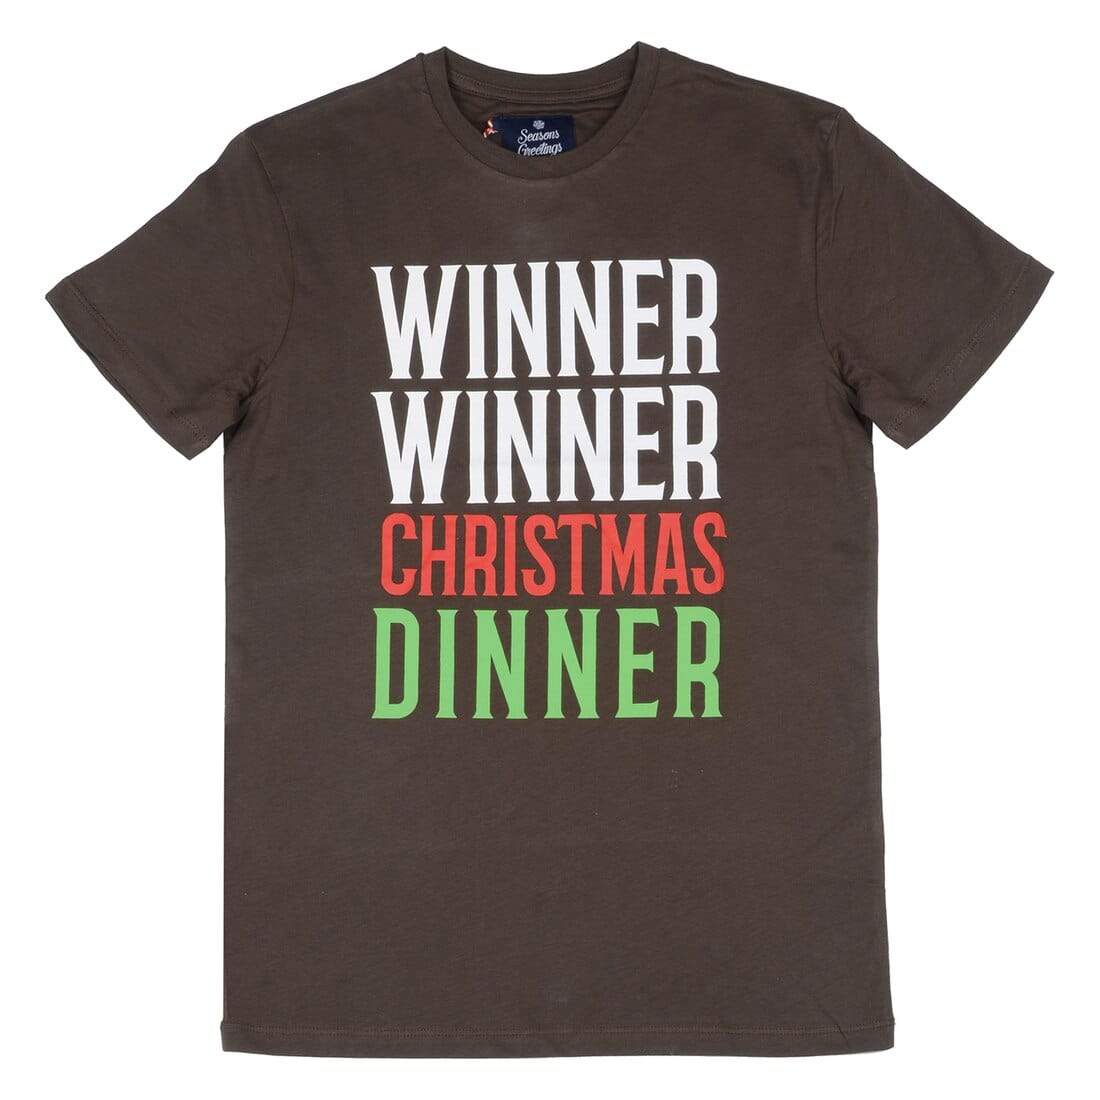 Mr Crimbo Mens Crew Brown Dinner Slogan Christmas T-Shirt - MrCrimbo.co.uk -VISMW06028BWN_A - S -christmas dinner